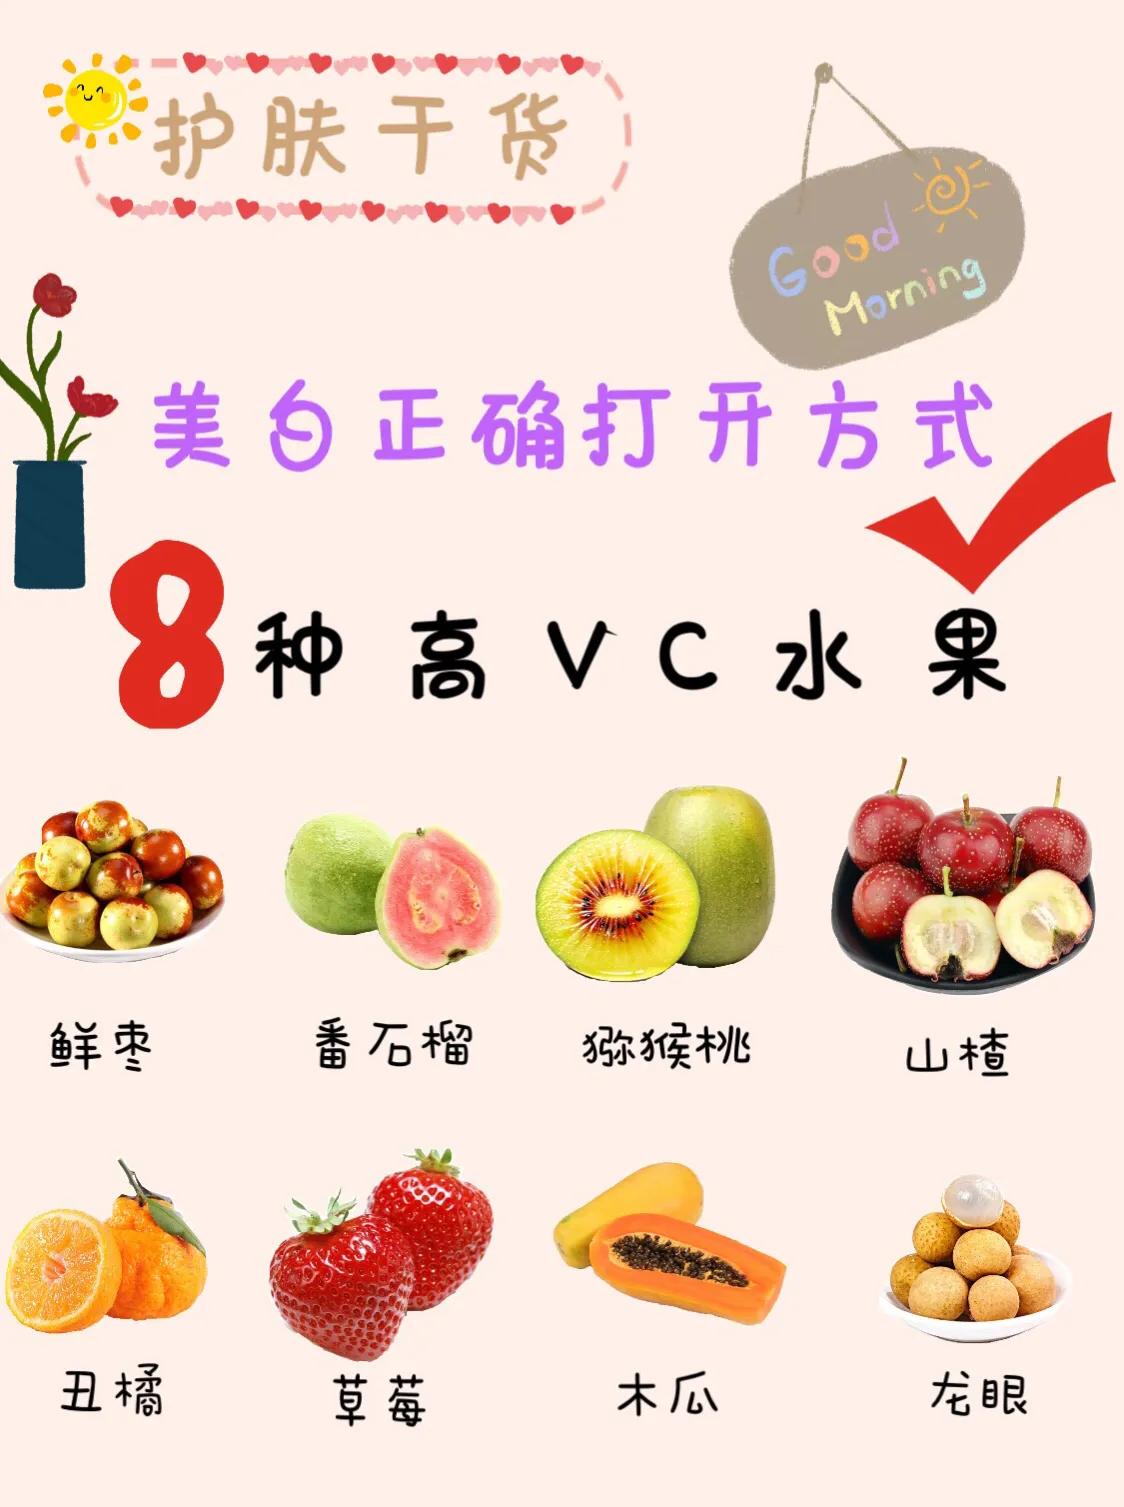 维生素c含量高的水果